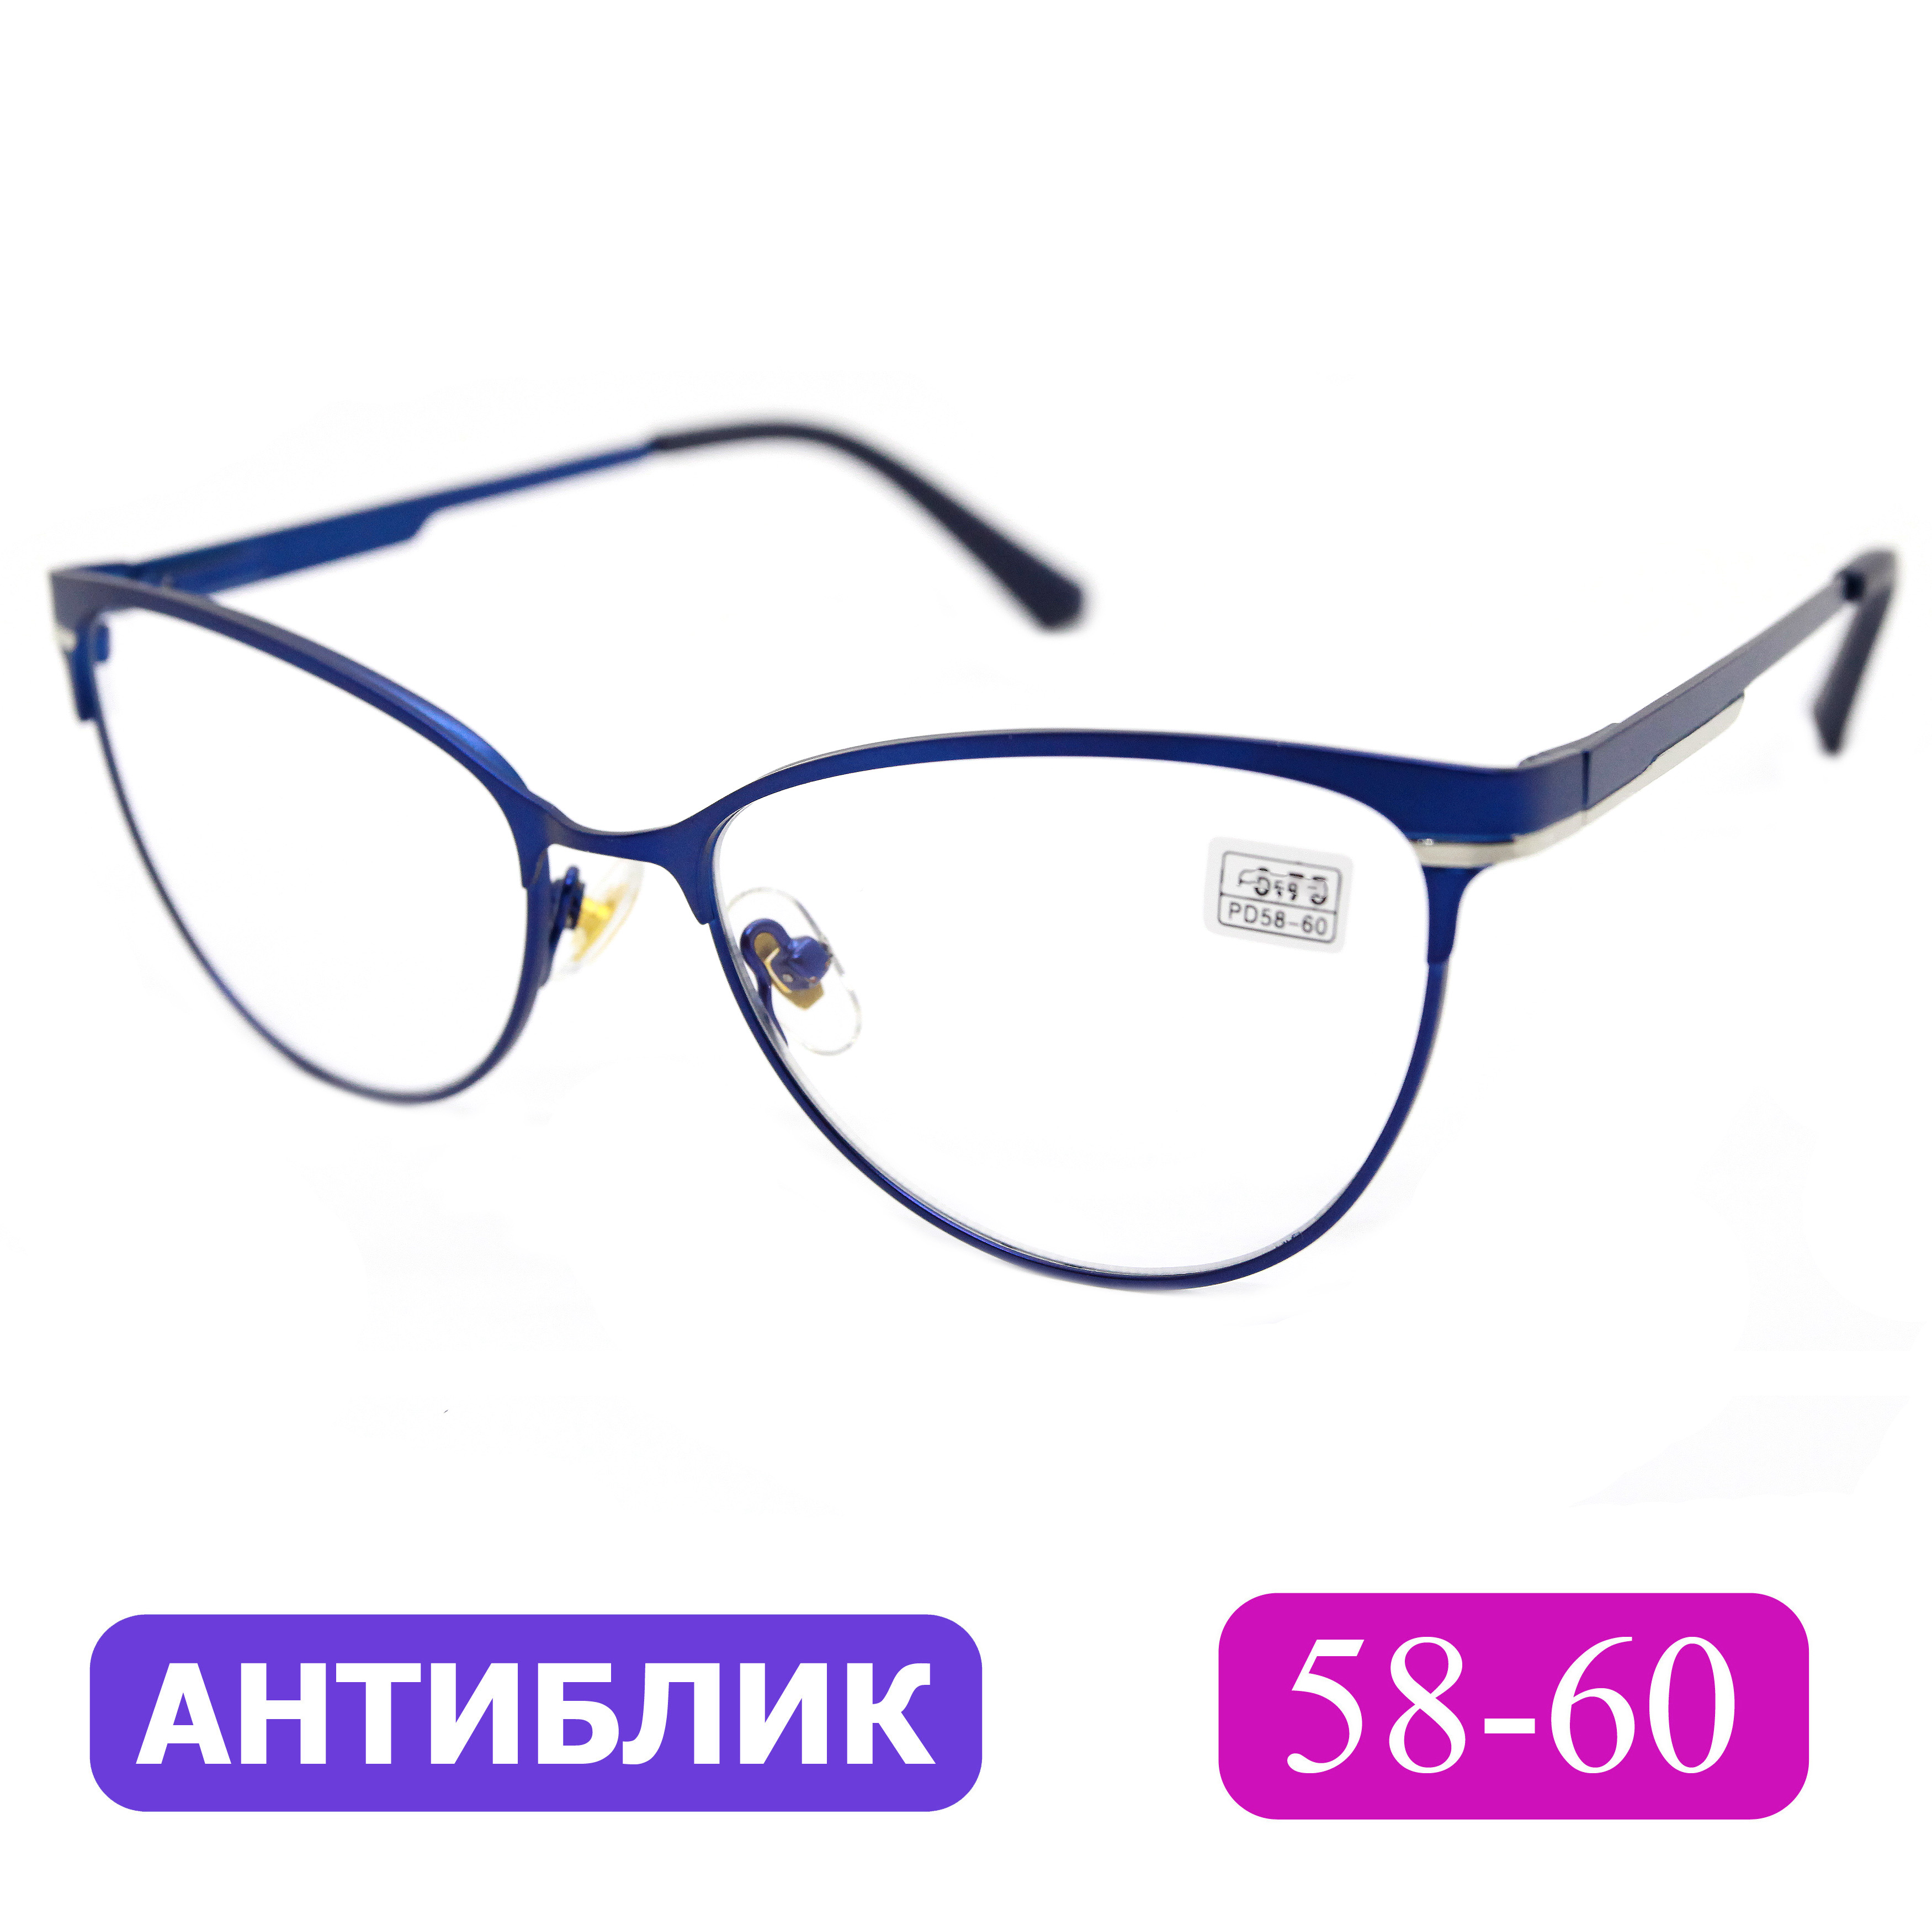 Готовые очки Favarit 7713 +0.75, без футляра, покрытие антиблик, цвет синий, РЦ 58-60